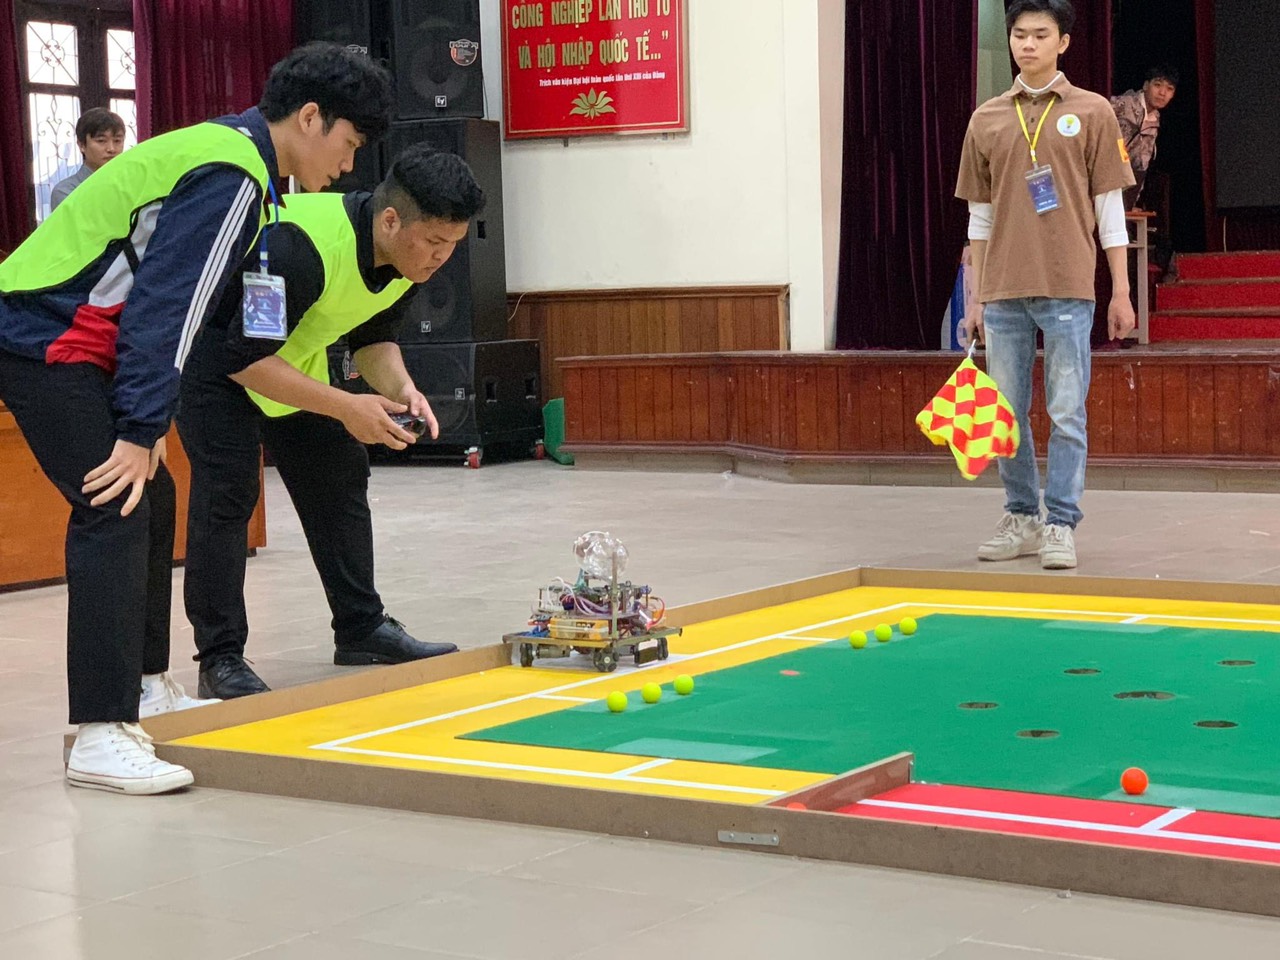 Đội DCN-SMAE giành chức vô địch cuộc thi `Robot đánh golf 2023`